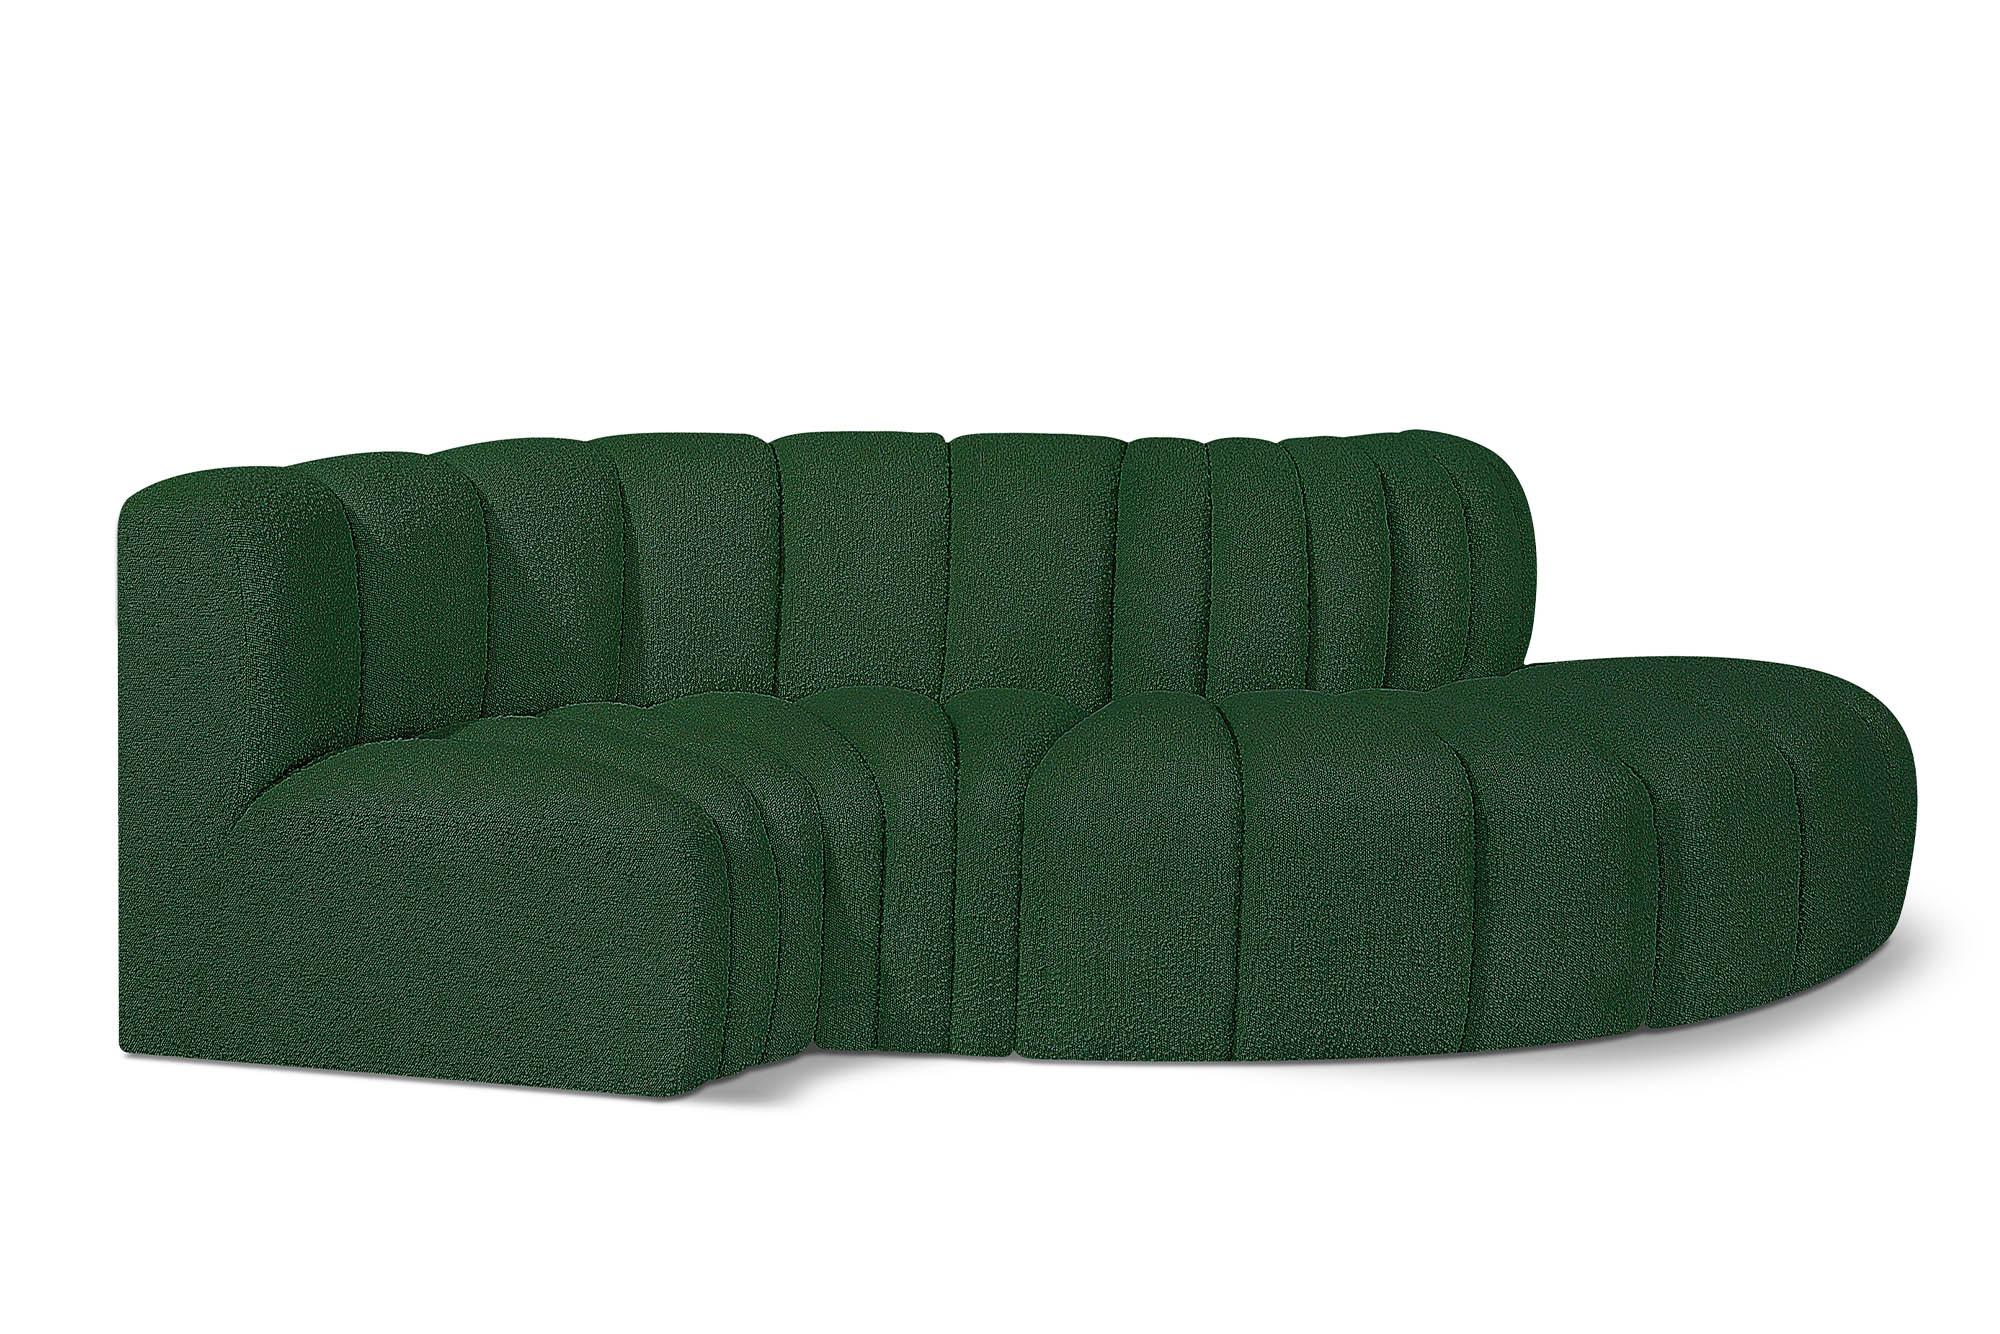 Contemporary, Modern Modular Sectional Sofa ARC 102Green-S4D 102Green-S4D in Green 